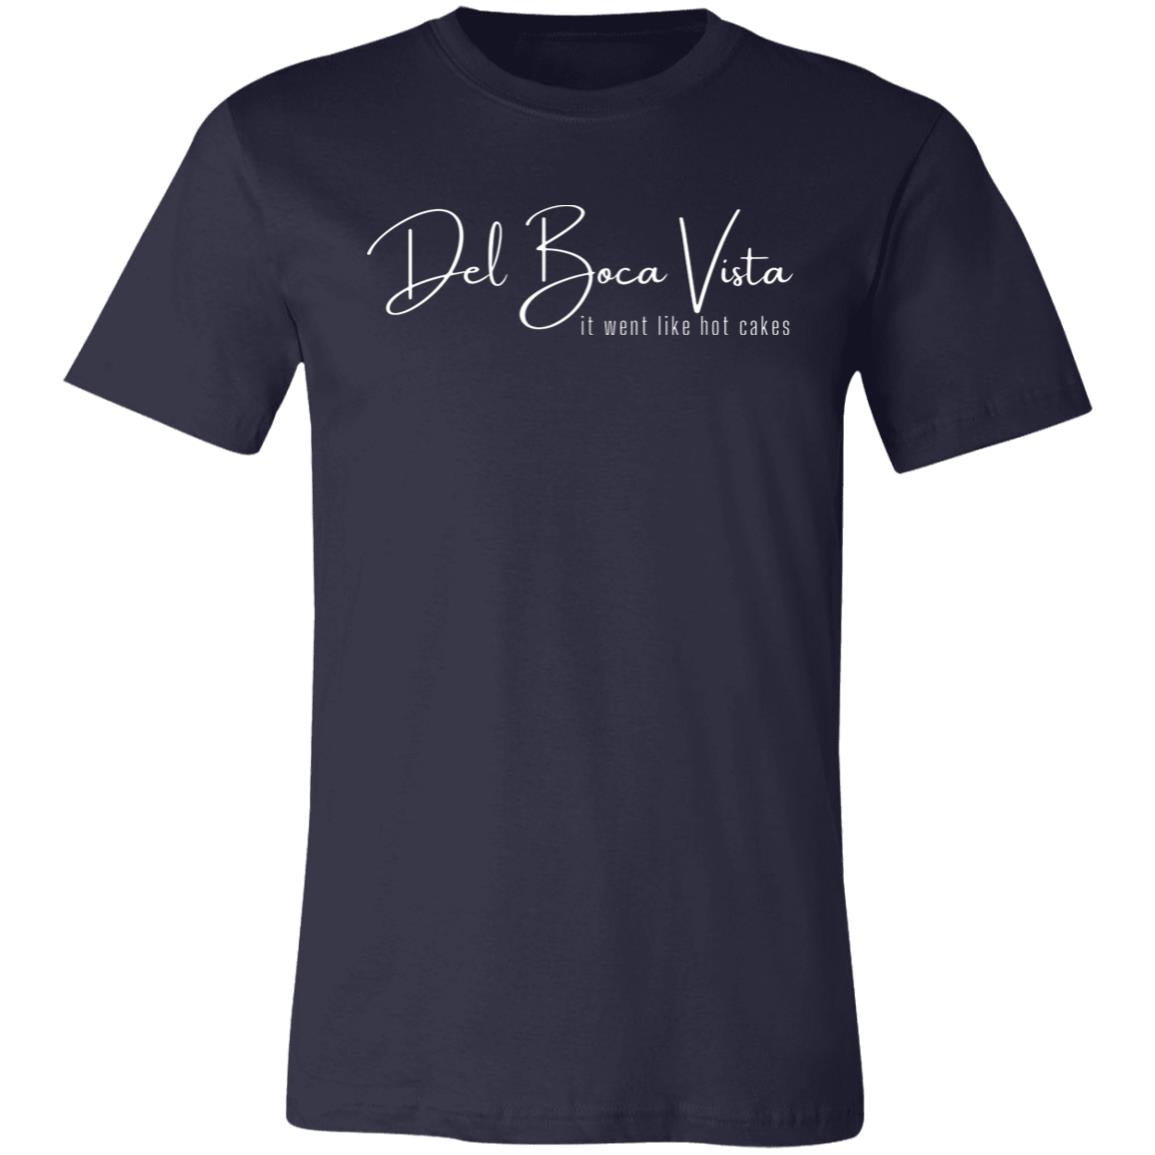 Seinfeld Del Boca Vista Comfy T-Shirt